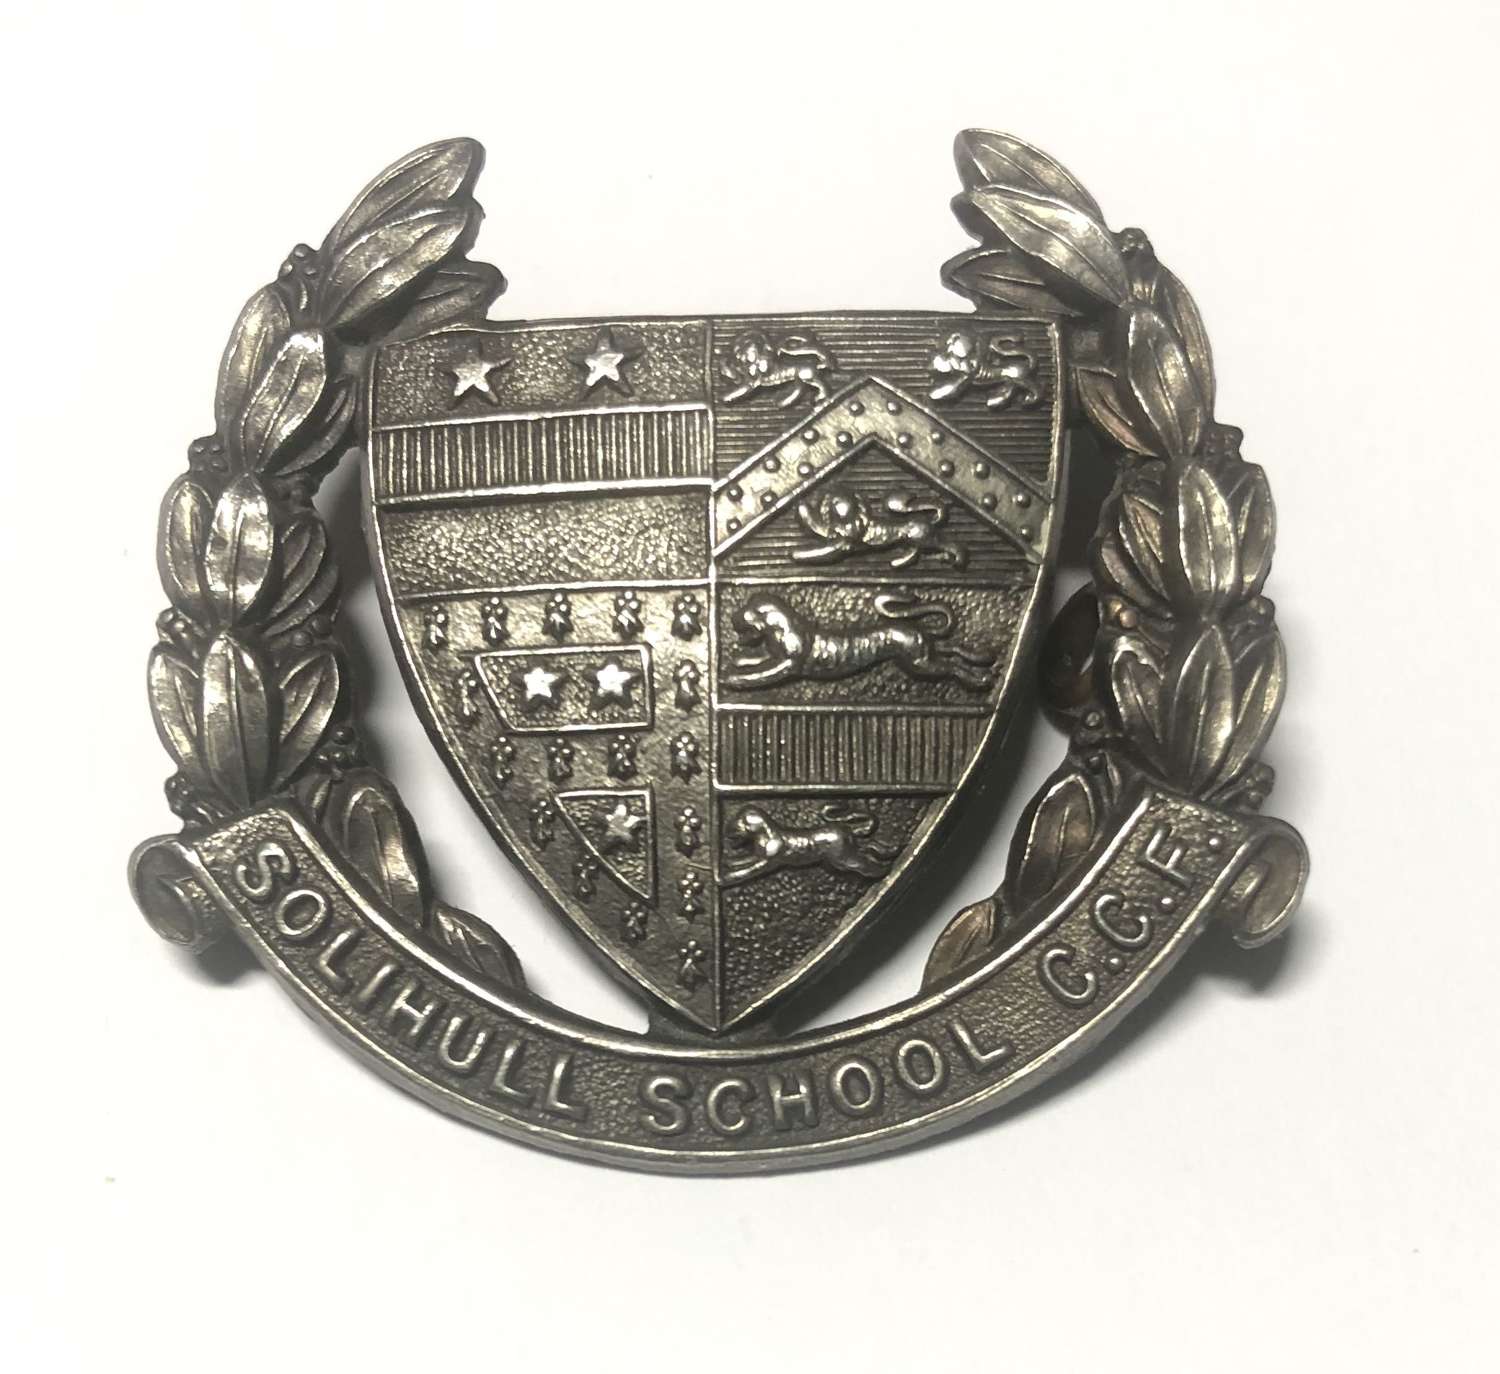 Solihull School CCF cap badge